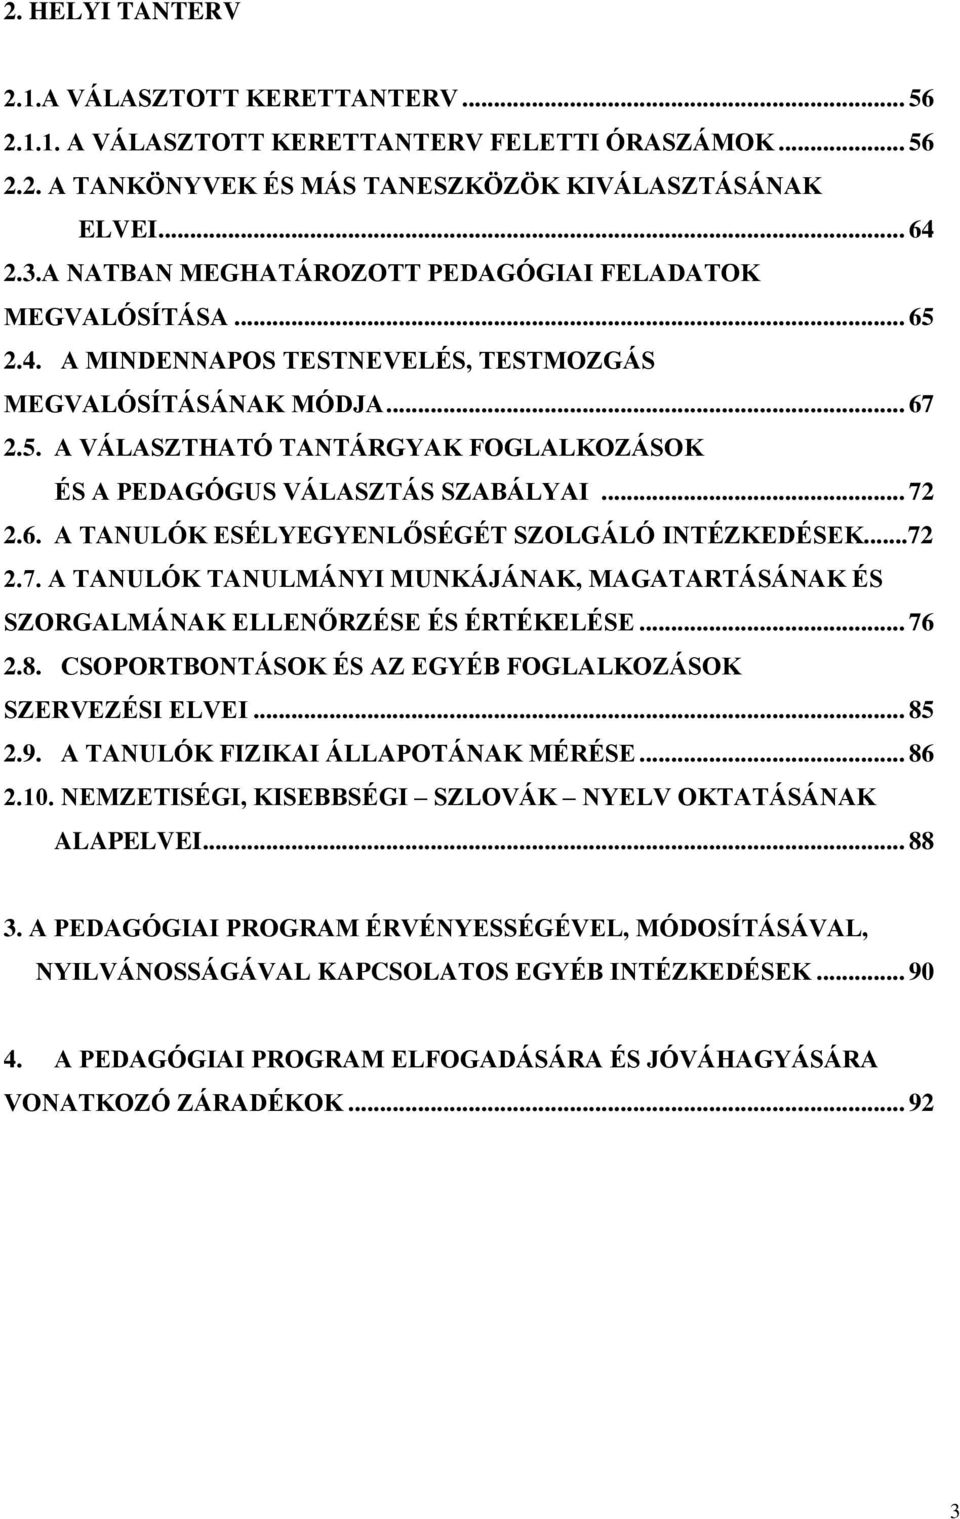 Erzsébethelyi Általános Iskola Békéscsaba, Madách u. 2 PEDAGÓGIAI PROGRAM  PDF Free Download